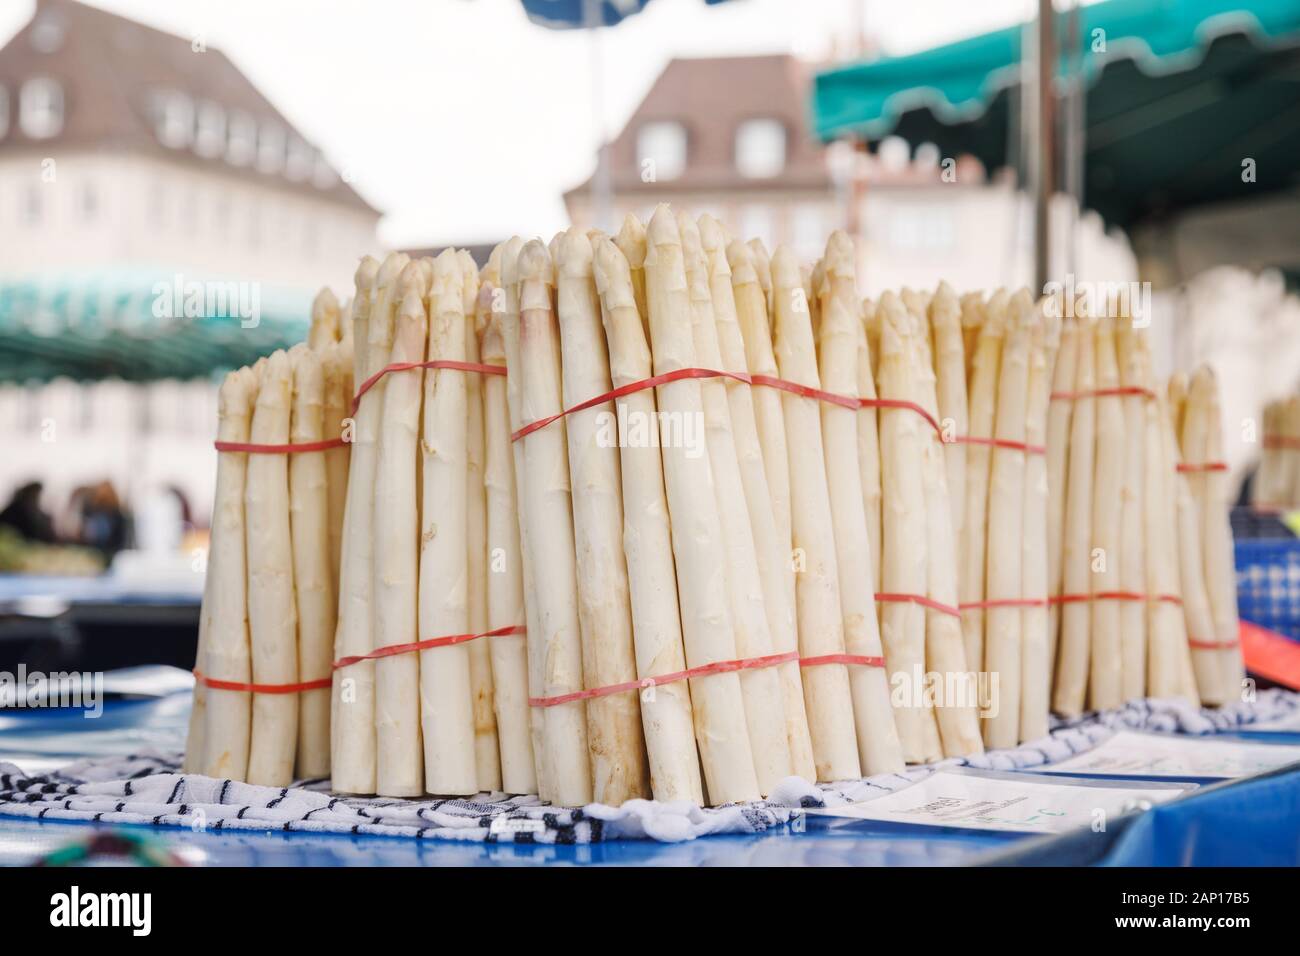 Materie asparagi bianchi per la vendita al mercato locale in Baviera Germania - una verdura diffusa durante la stagione Spargel (Spargelzeit o Spargelsaison) Foto Stock